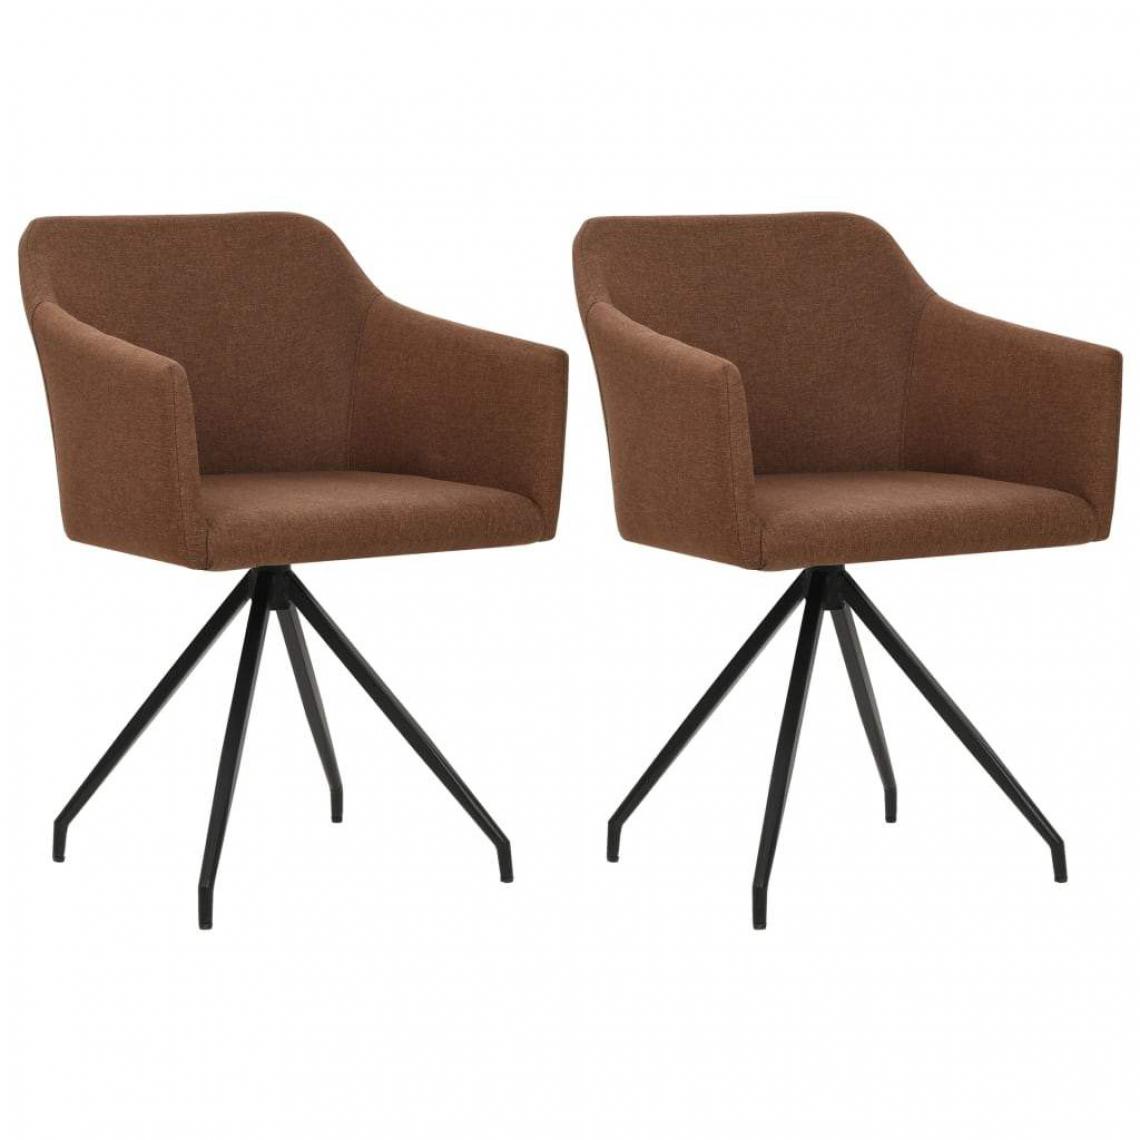 Decoshop26 - Lot de 2 chaises de salle à manger cuisine design moderne tissu marron CDS020746 - Chaises